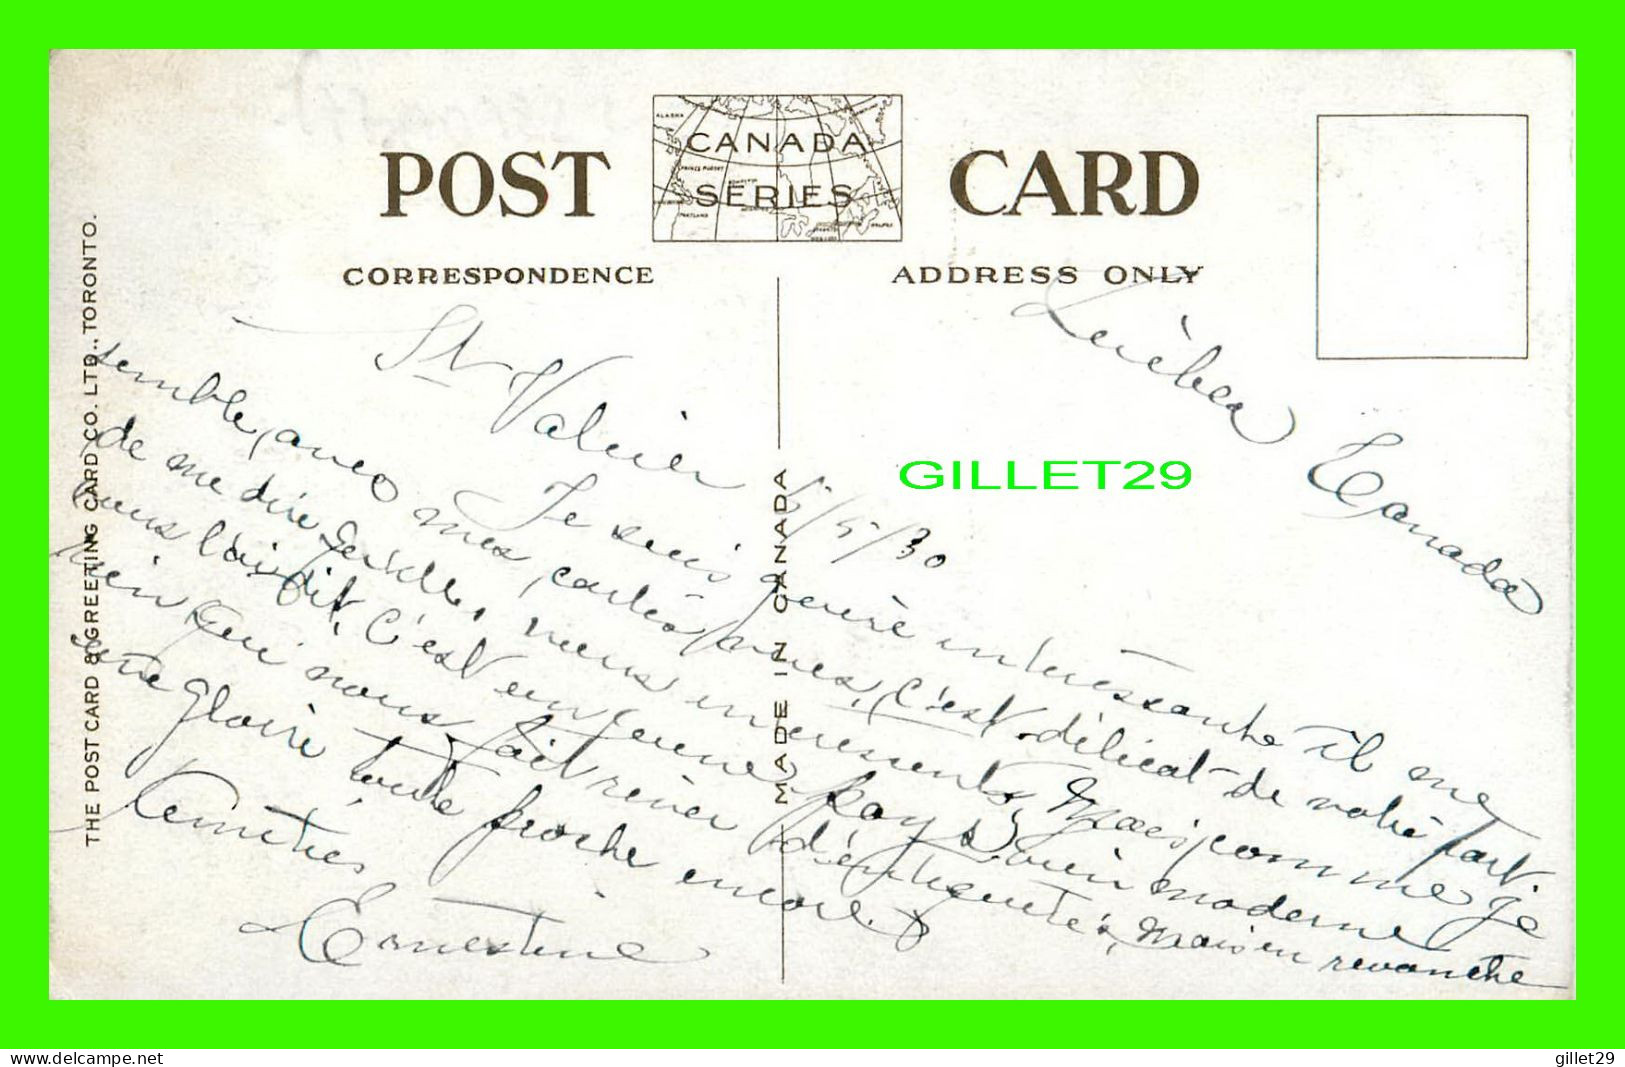 QUÉBEC - PORTE ST LOUIS - ANIMÉE DE CALÈCHES - CIRCULÉE EN 1930 - THE POST CARD GREETING CARD CO LTD - - Québec – Les Portes